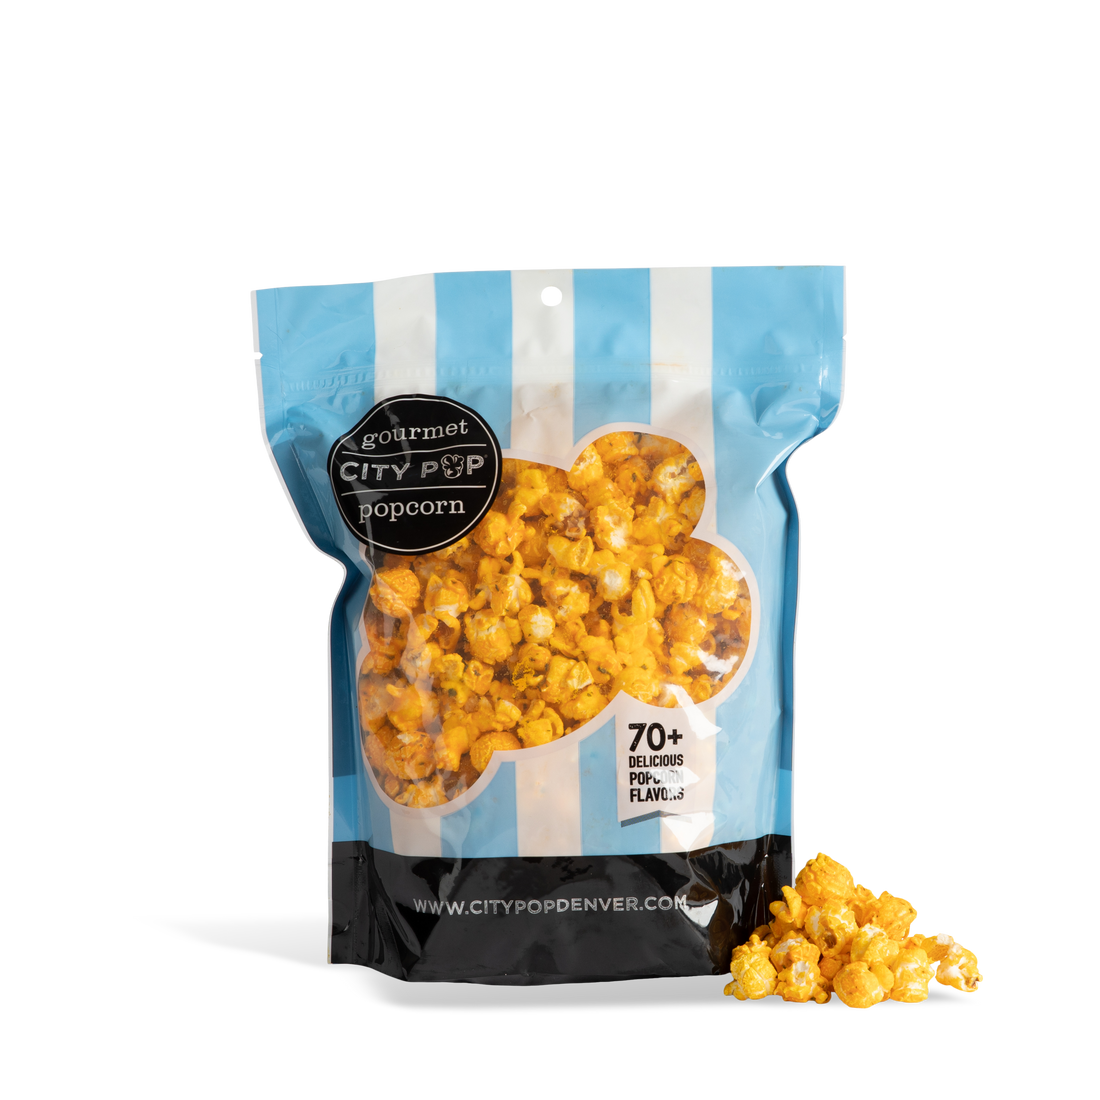 City Pop Loaded Potato Popcorn